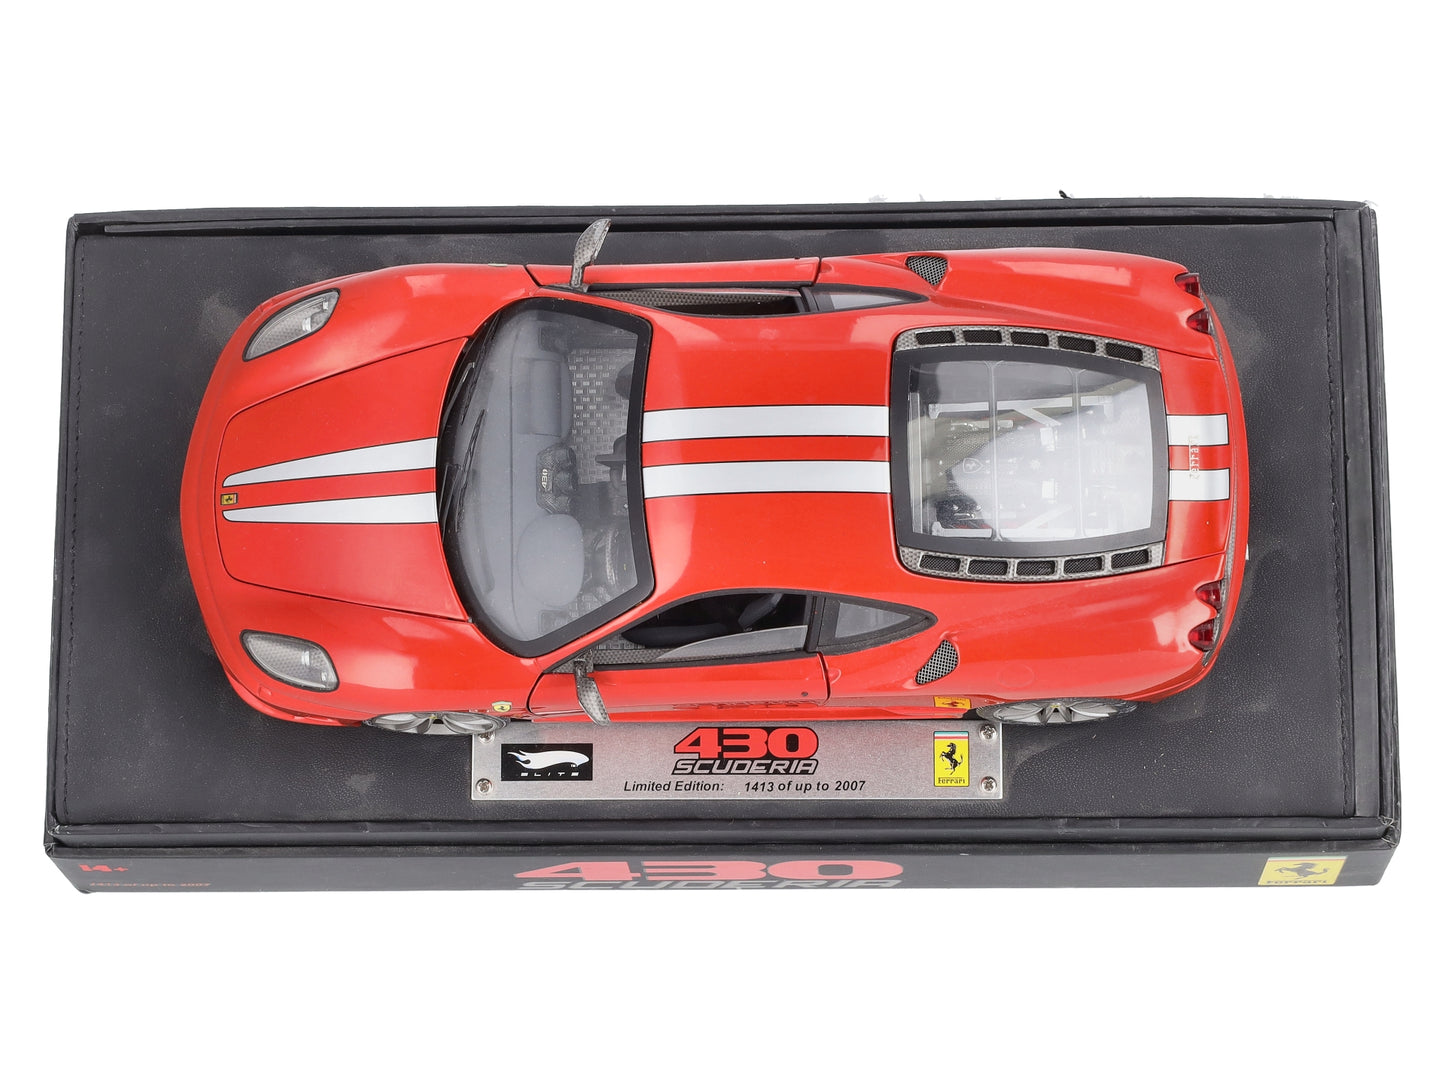 Hot Wheels l7121-0510 1:18 Scale Ferrari  430 Scuderia EX